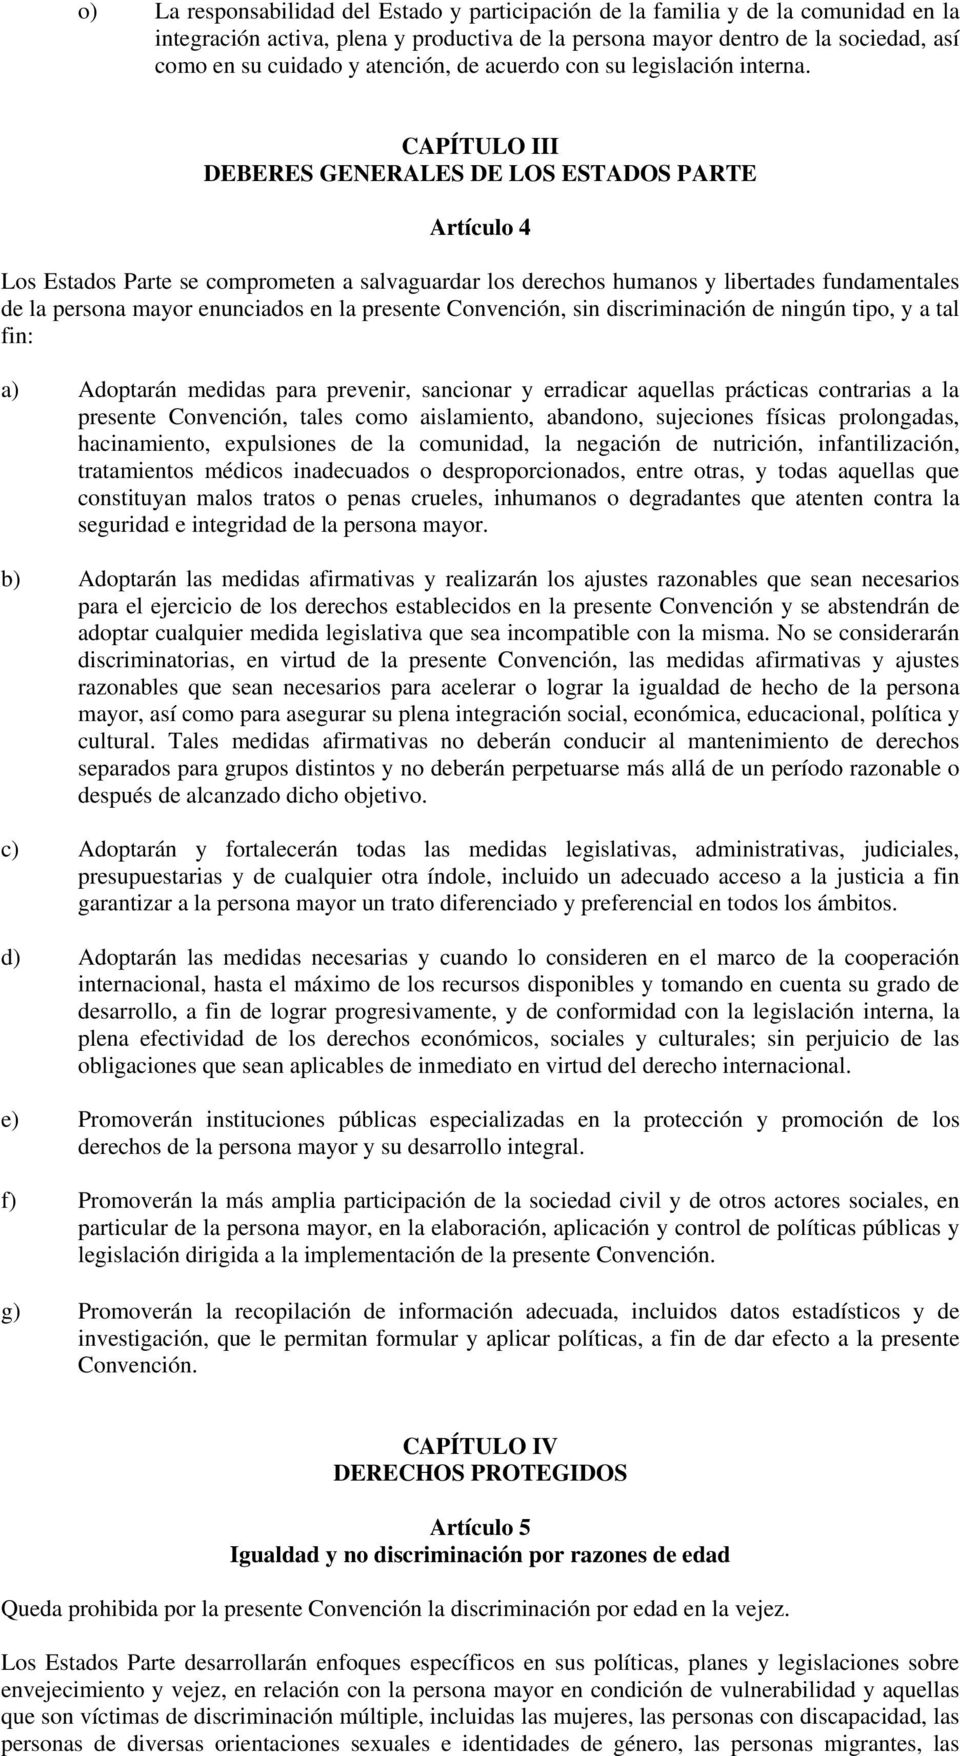 CAPÍTULO III DEBERES GENERALES DE LOS ESTADOS PARTE Artículo 4 Los Estados Parte se comprometen a salvaguardar los derechos humanos y libertades fundamentales de la persona mayor enunciados en la